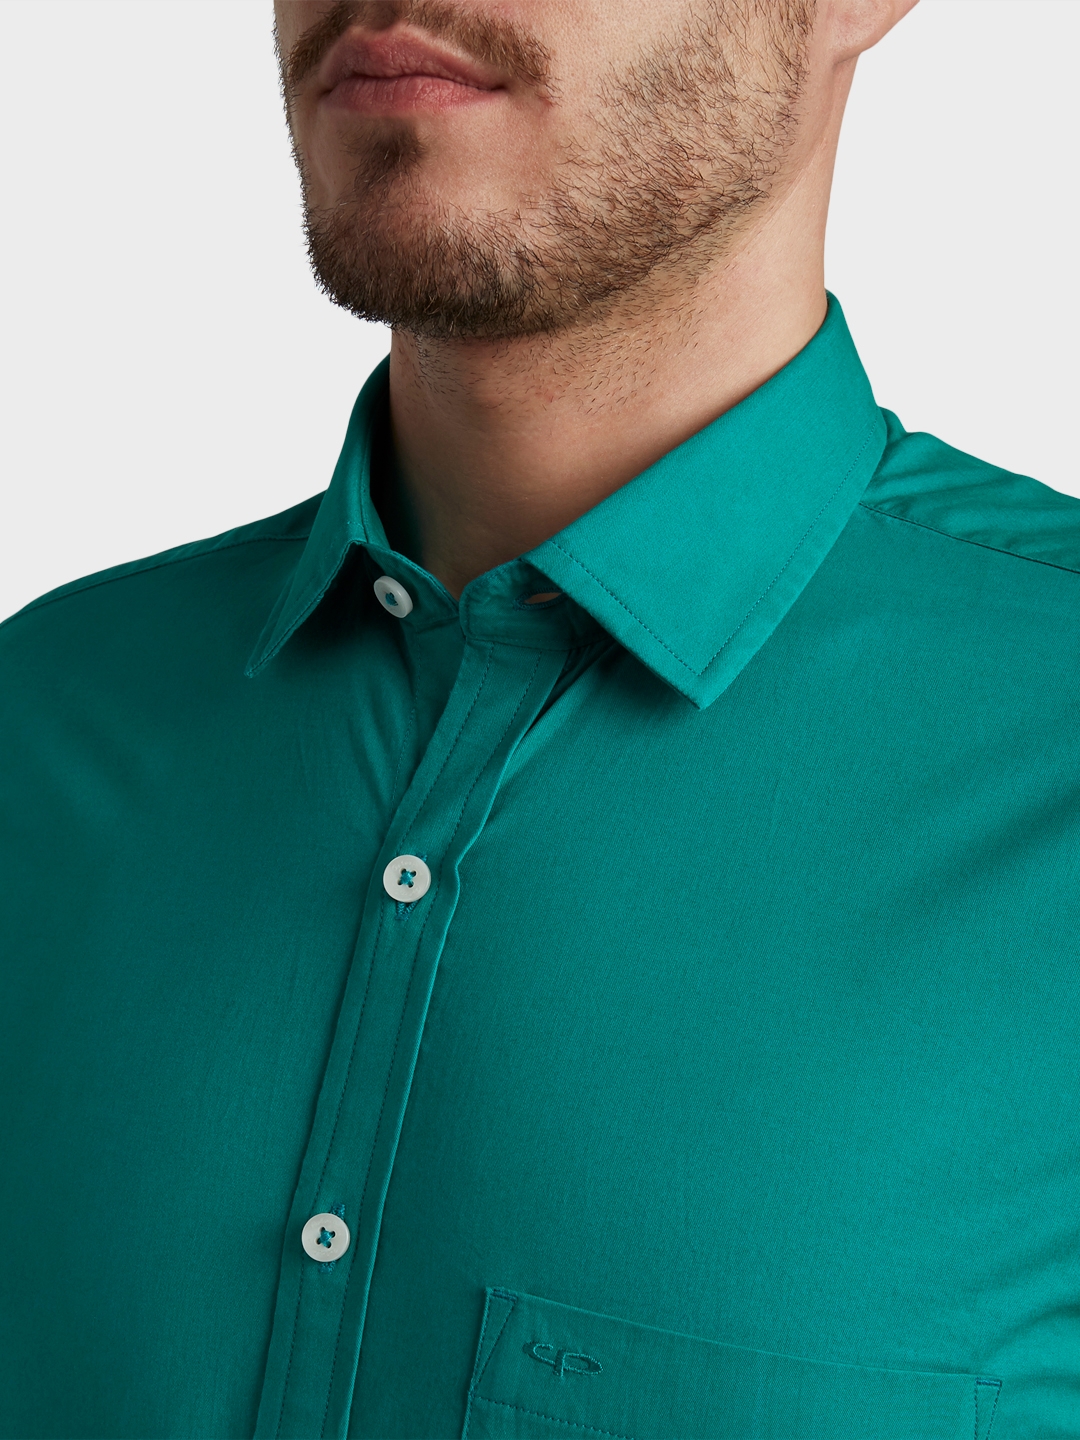 ColorPlus | ColorPlus Medium Green Shirt 4